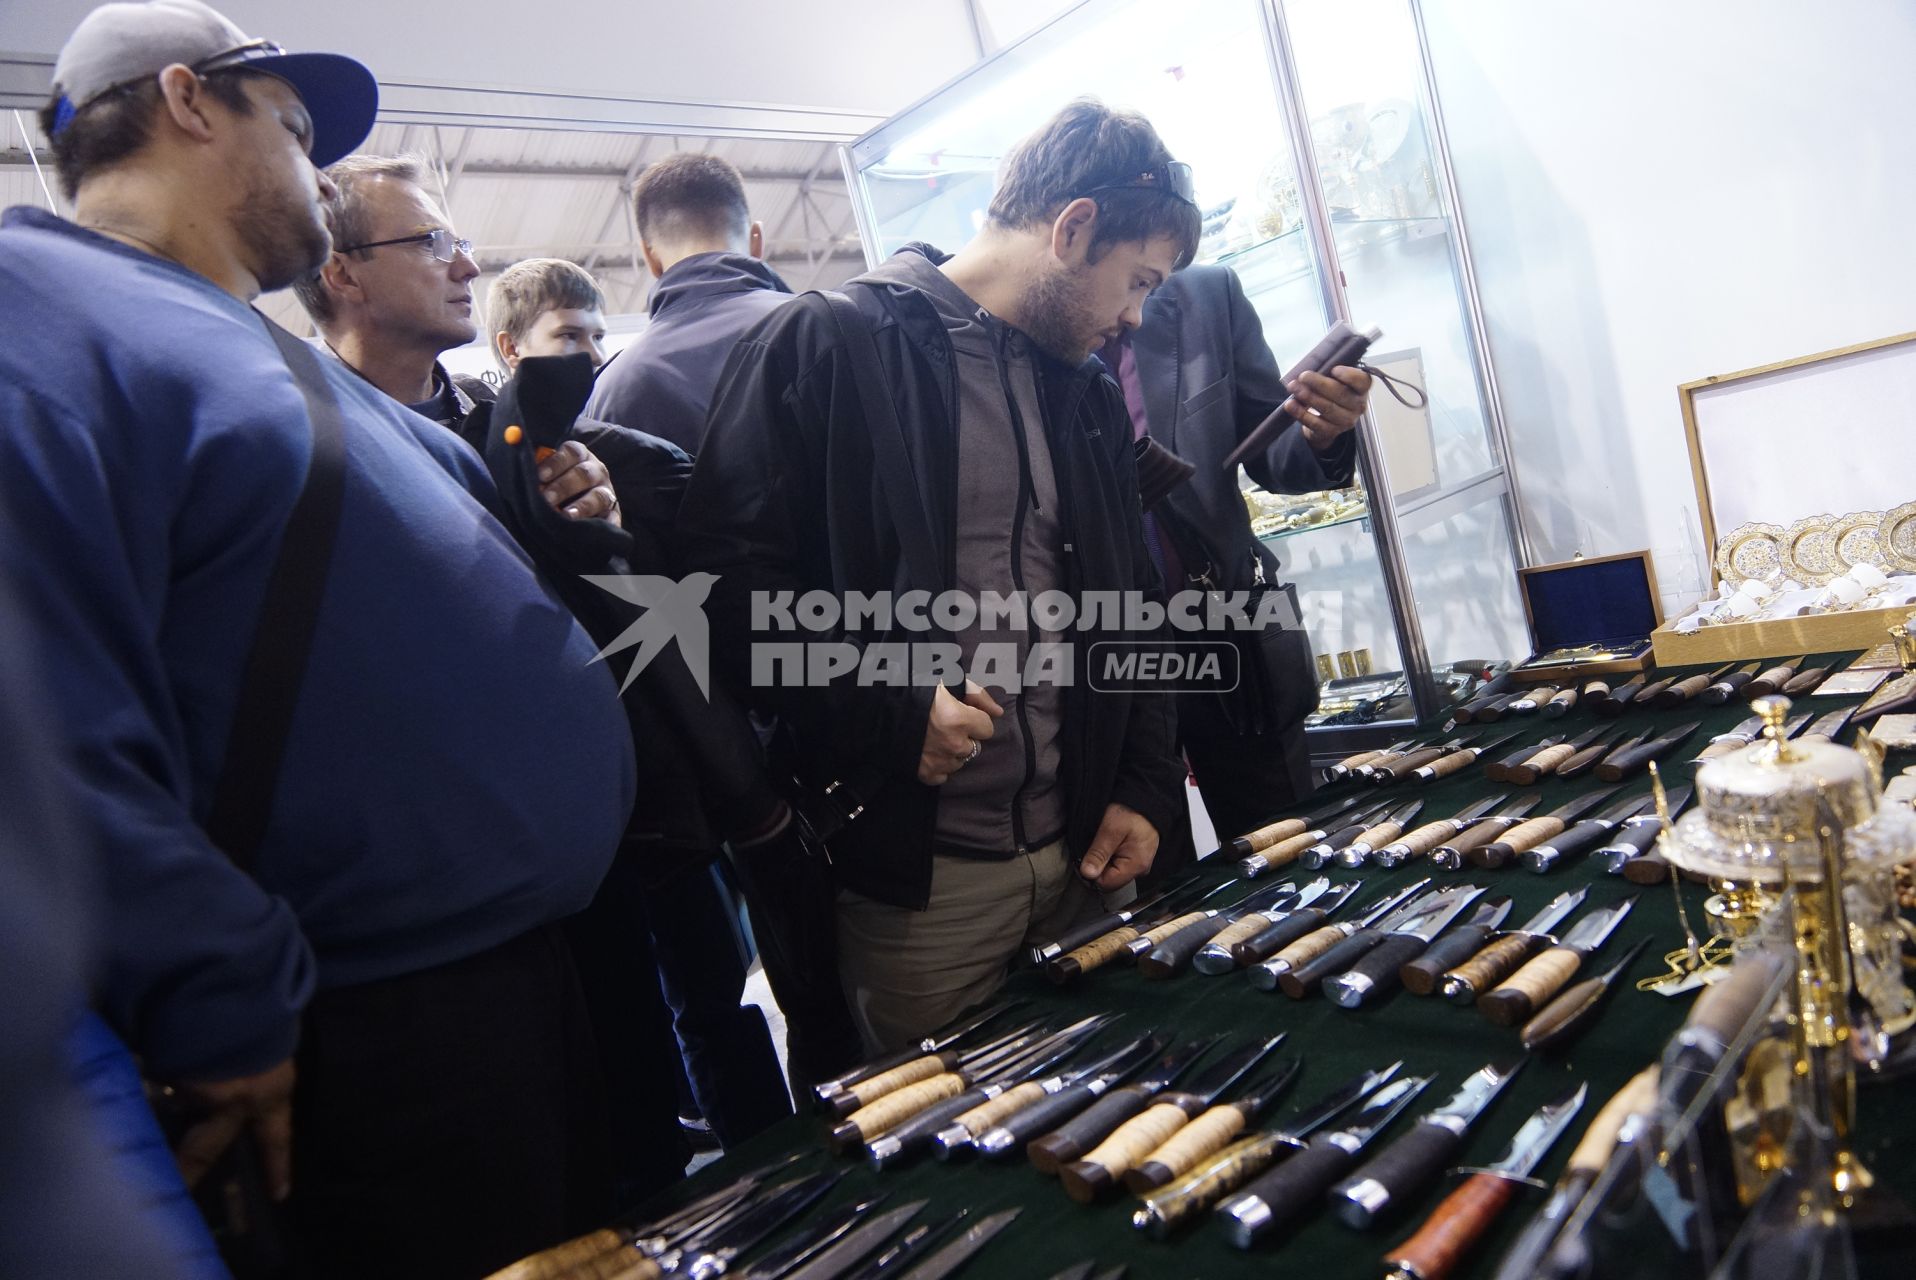 Нижний Тагил. Посетители изучают ножи у стенда `Златоустовской оружейной компании` на 10-ой международной выставке вооружений `Russia Arms Expo - 2015`.